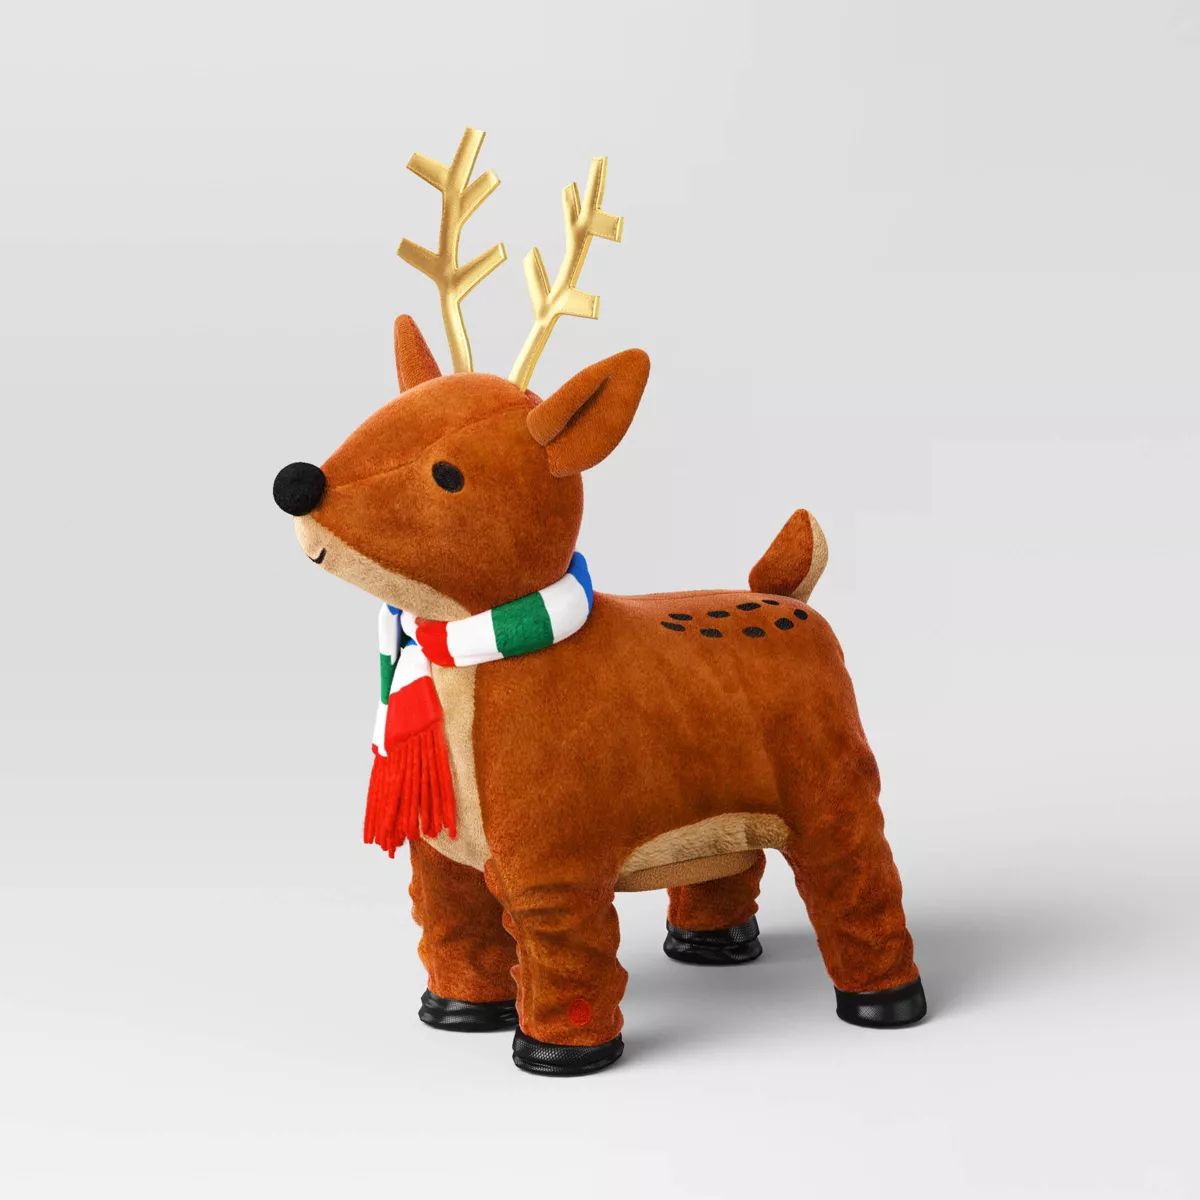 13" Battery Operated Animated Plush Dancing Reindeer Christmas Figurine - Wondershop™ Brown | Target